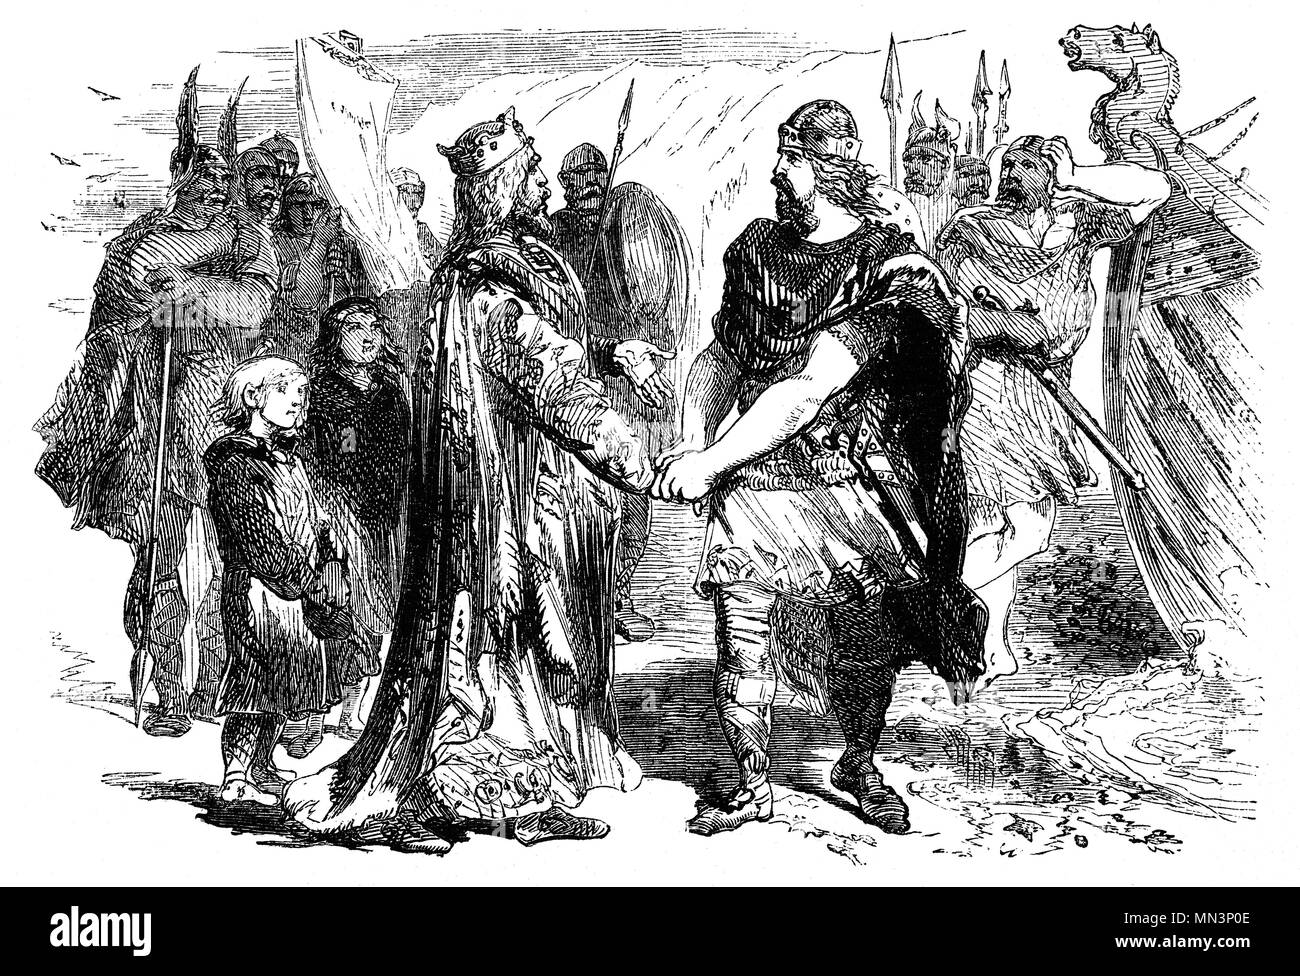 Edmund Ironside (990 – 1016), conosciuto anche come Edmund II, fu Re d'Inghilterra dal 23 aprile al 30 novembre 1016. Era figlio del re Æthelred l'Unready e il suo regno fu marinato da una guerra che aveva ereditato dal padre. Edmund combatté costantemente i danesi e i loro sostenitori inglesi fino alla decisiva battaglia di Assandun il 18 ottobre 1016, quando Re Knut sconfisse Edmund, dopo di che i due re si incontrarono sull'isola di Alney nel fiume Severn e negoziarono una pace che divideva il paese tra loro. Edmund ricevette Wessex mentre Cnut prese Mercia e probabilmente Northumbria. Foto Stock